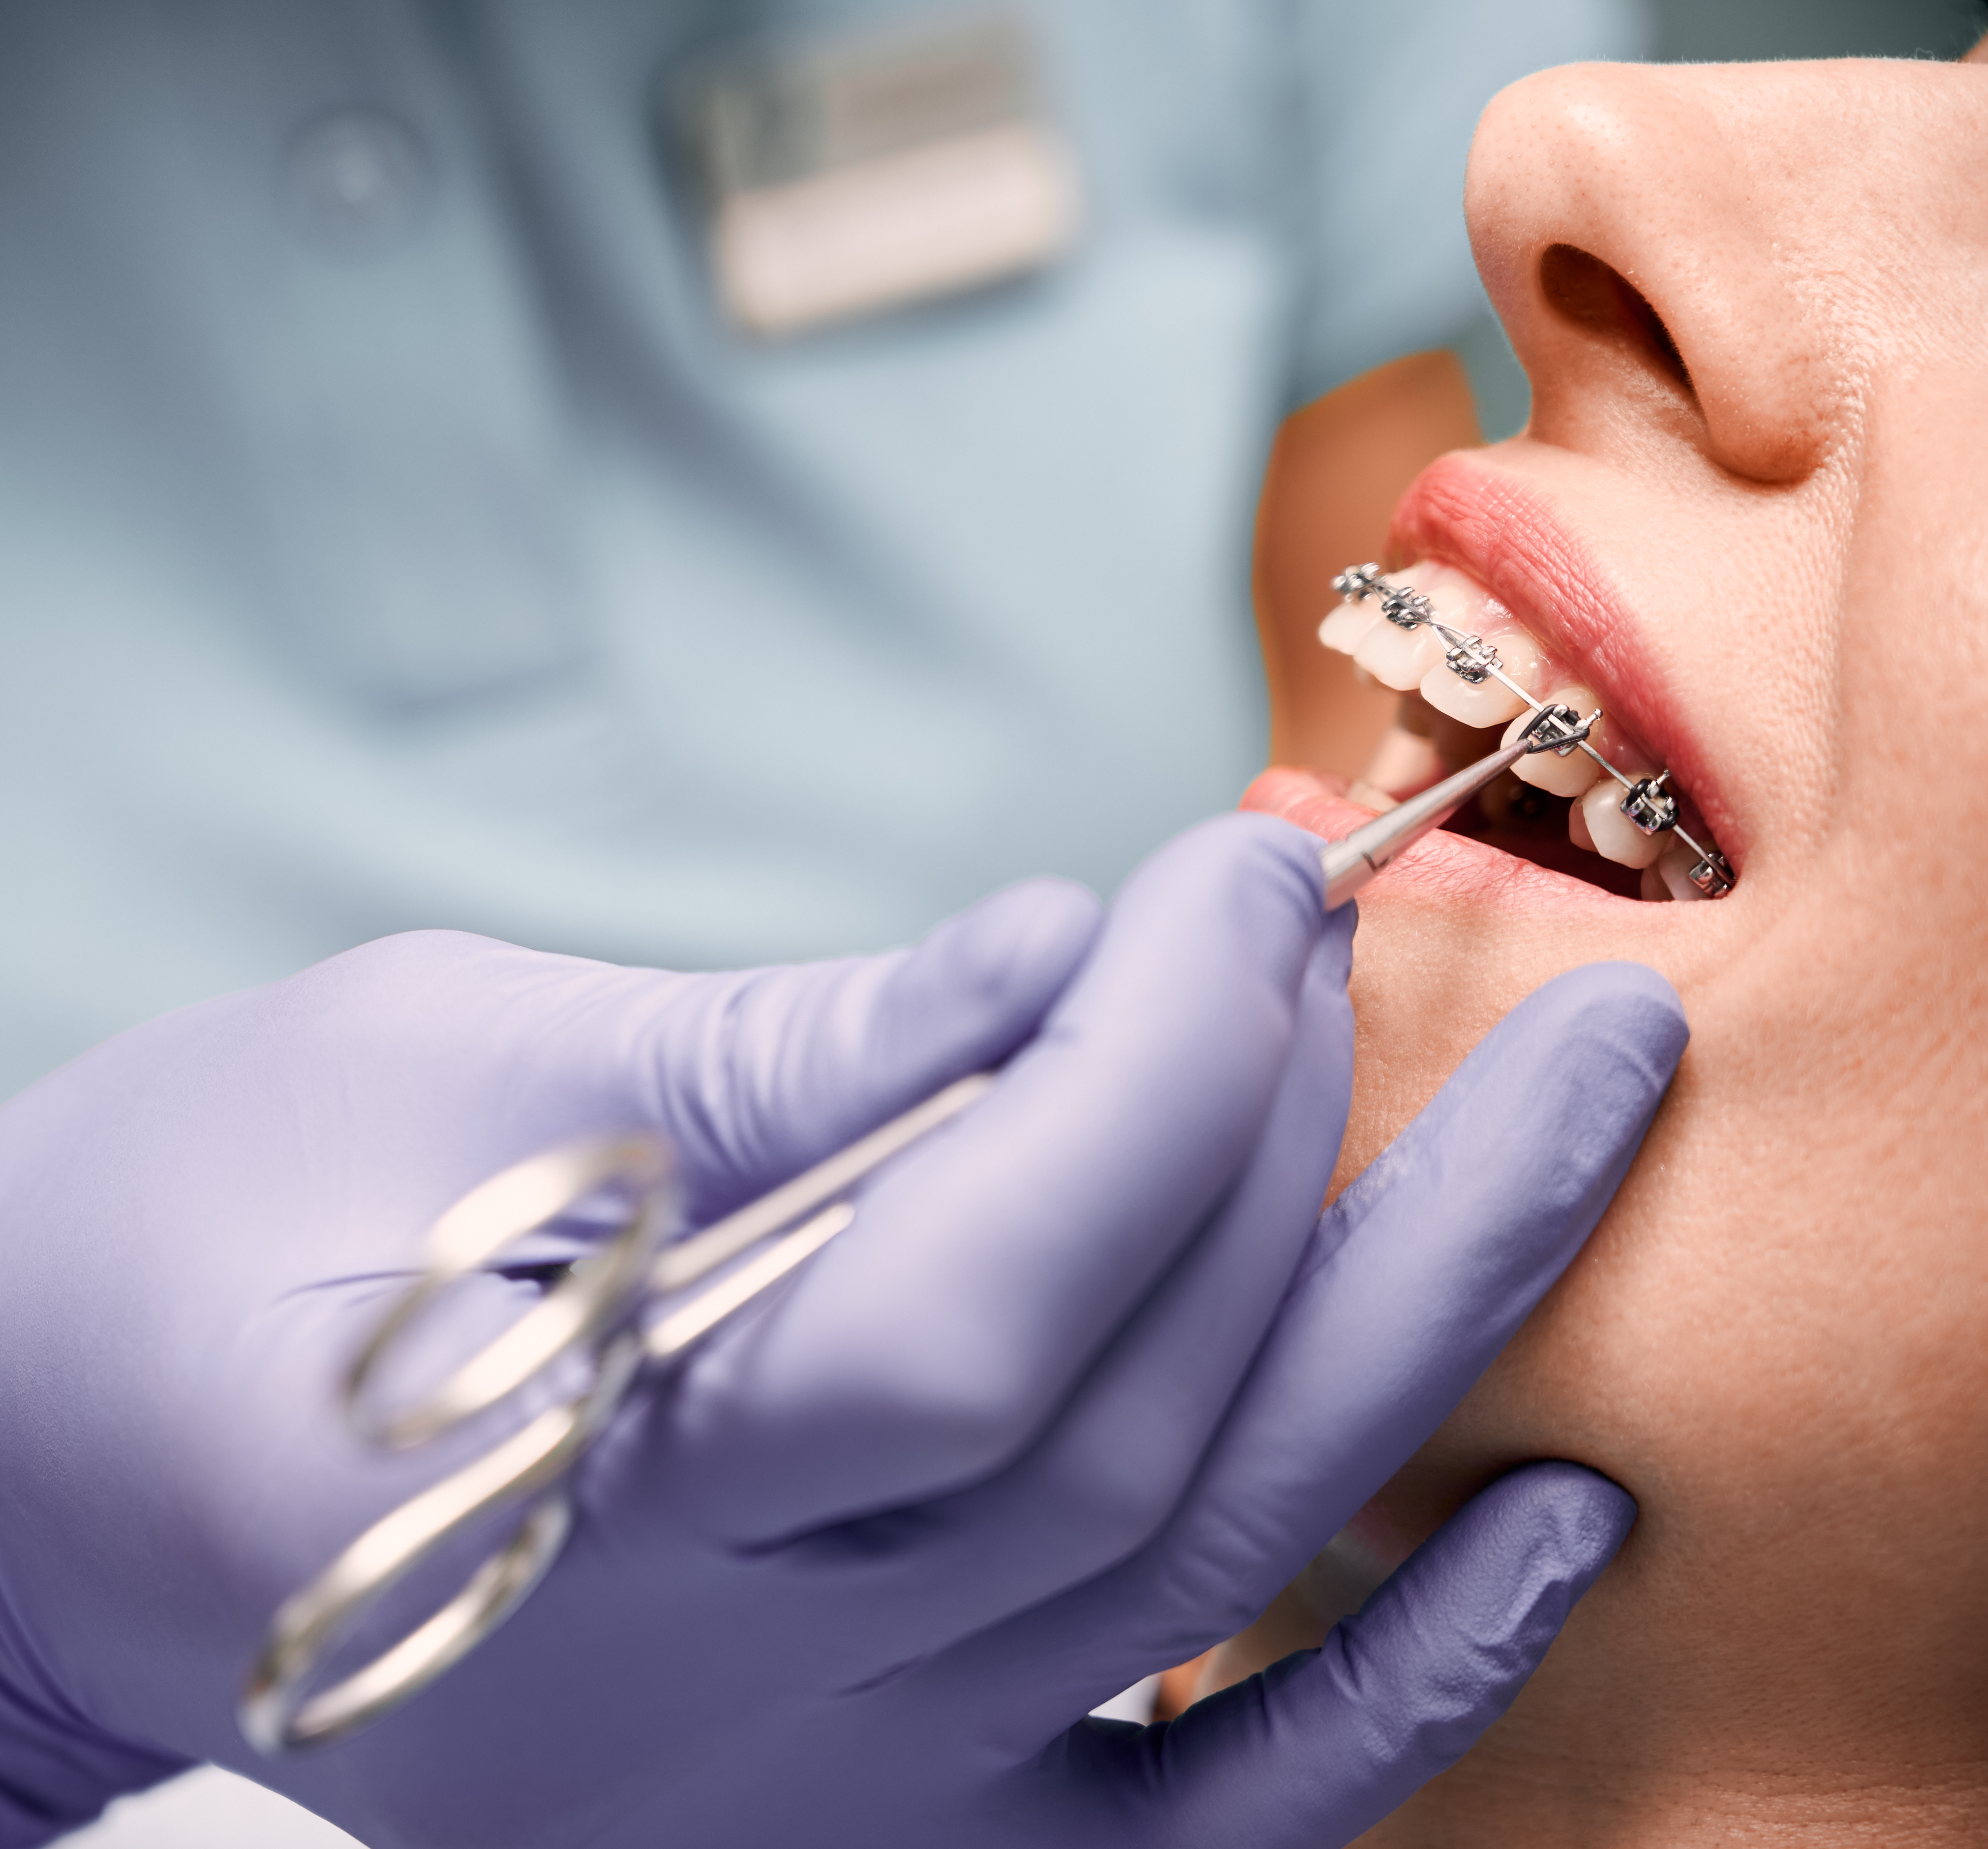 Orthodontist El Paso